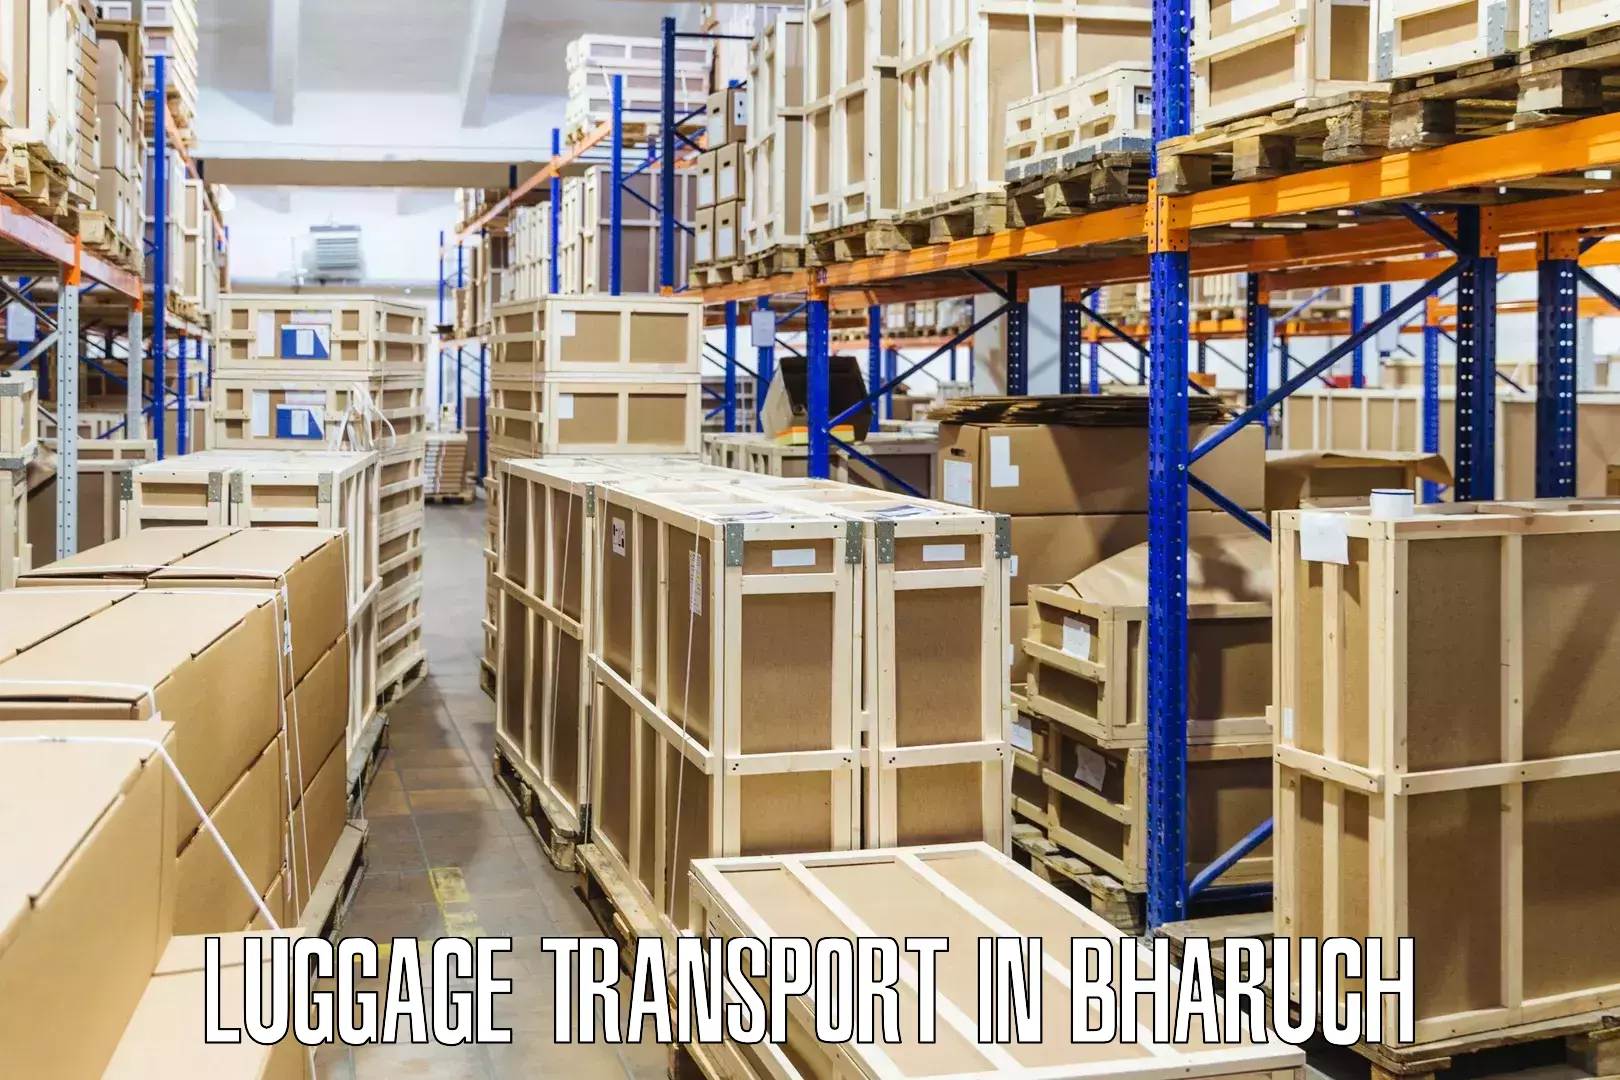 Regional luggage transport in Bharuch